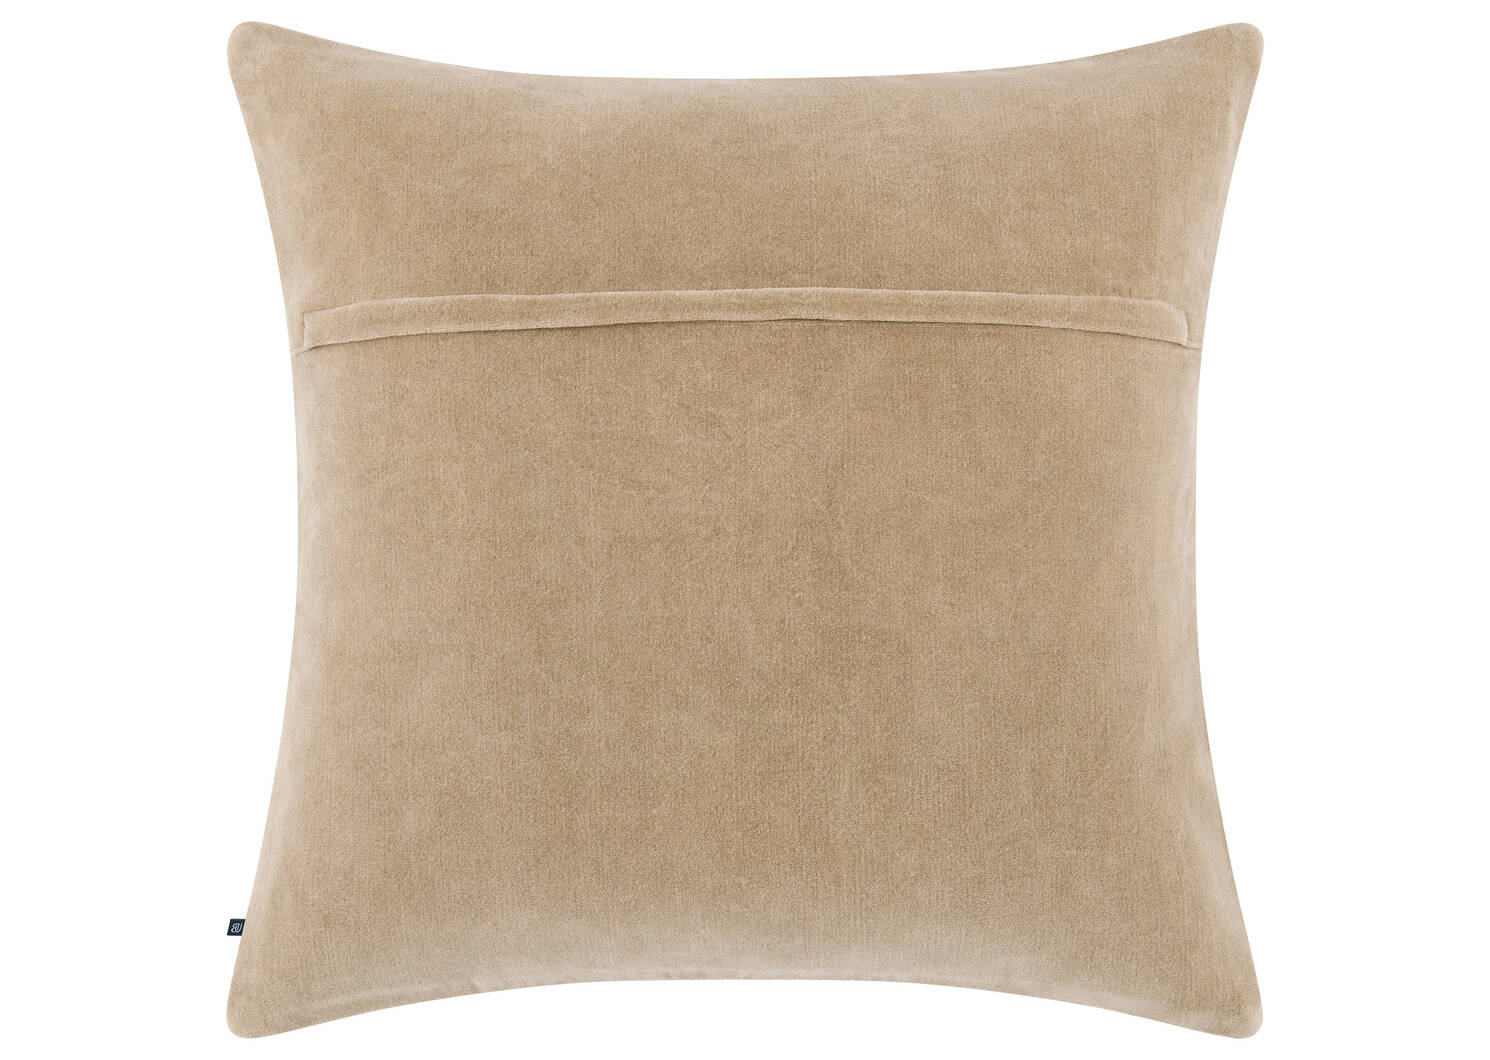 Morley Cotton Velvet Pillow 20x20 San